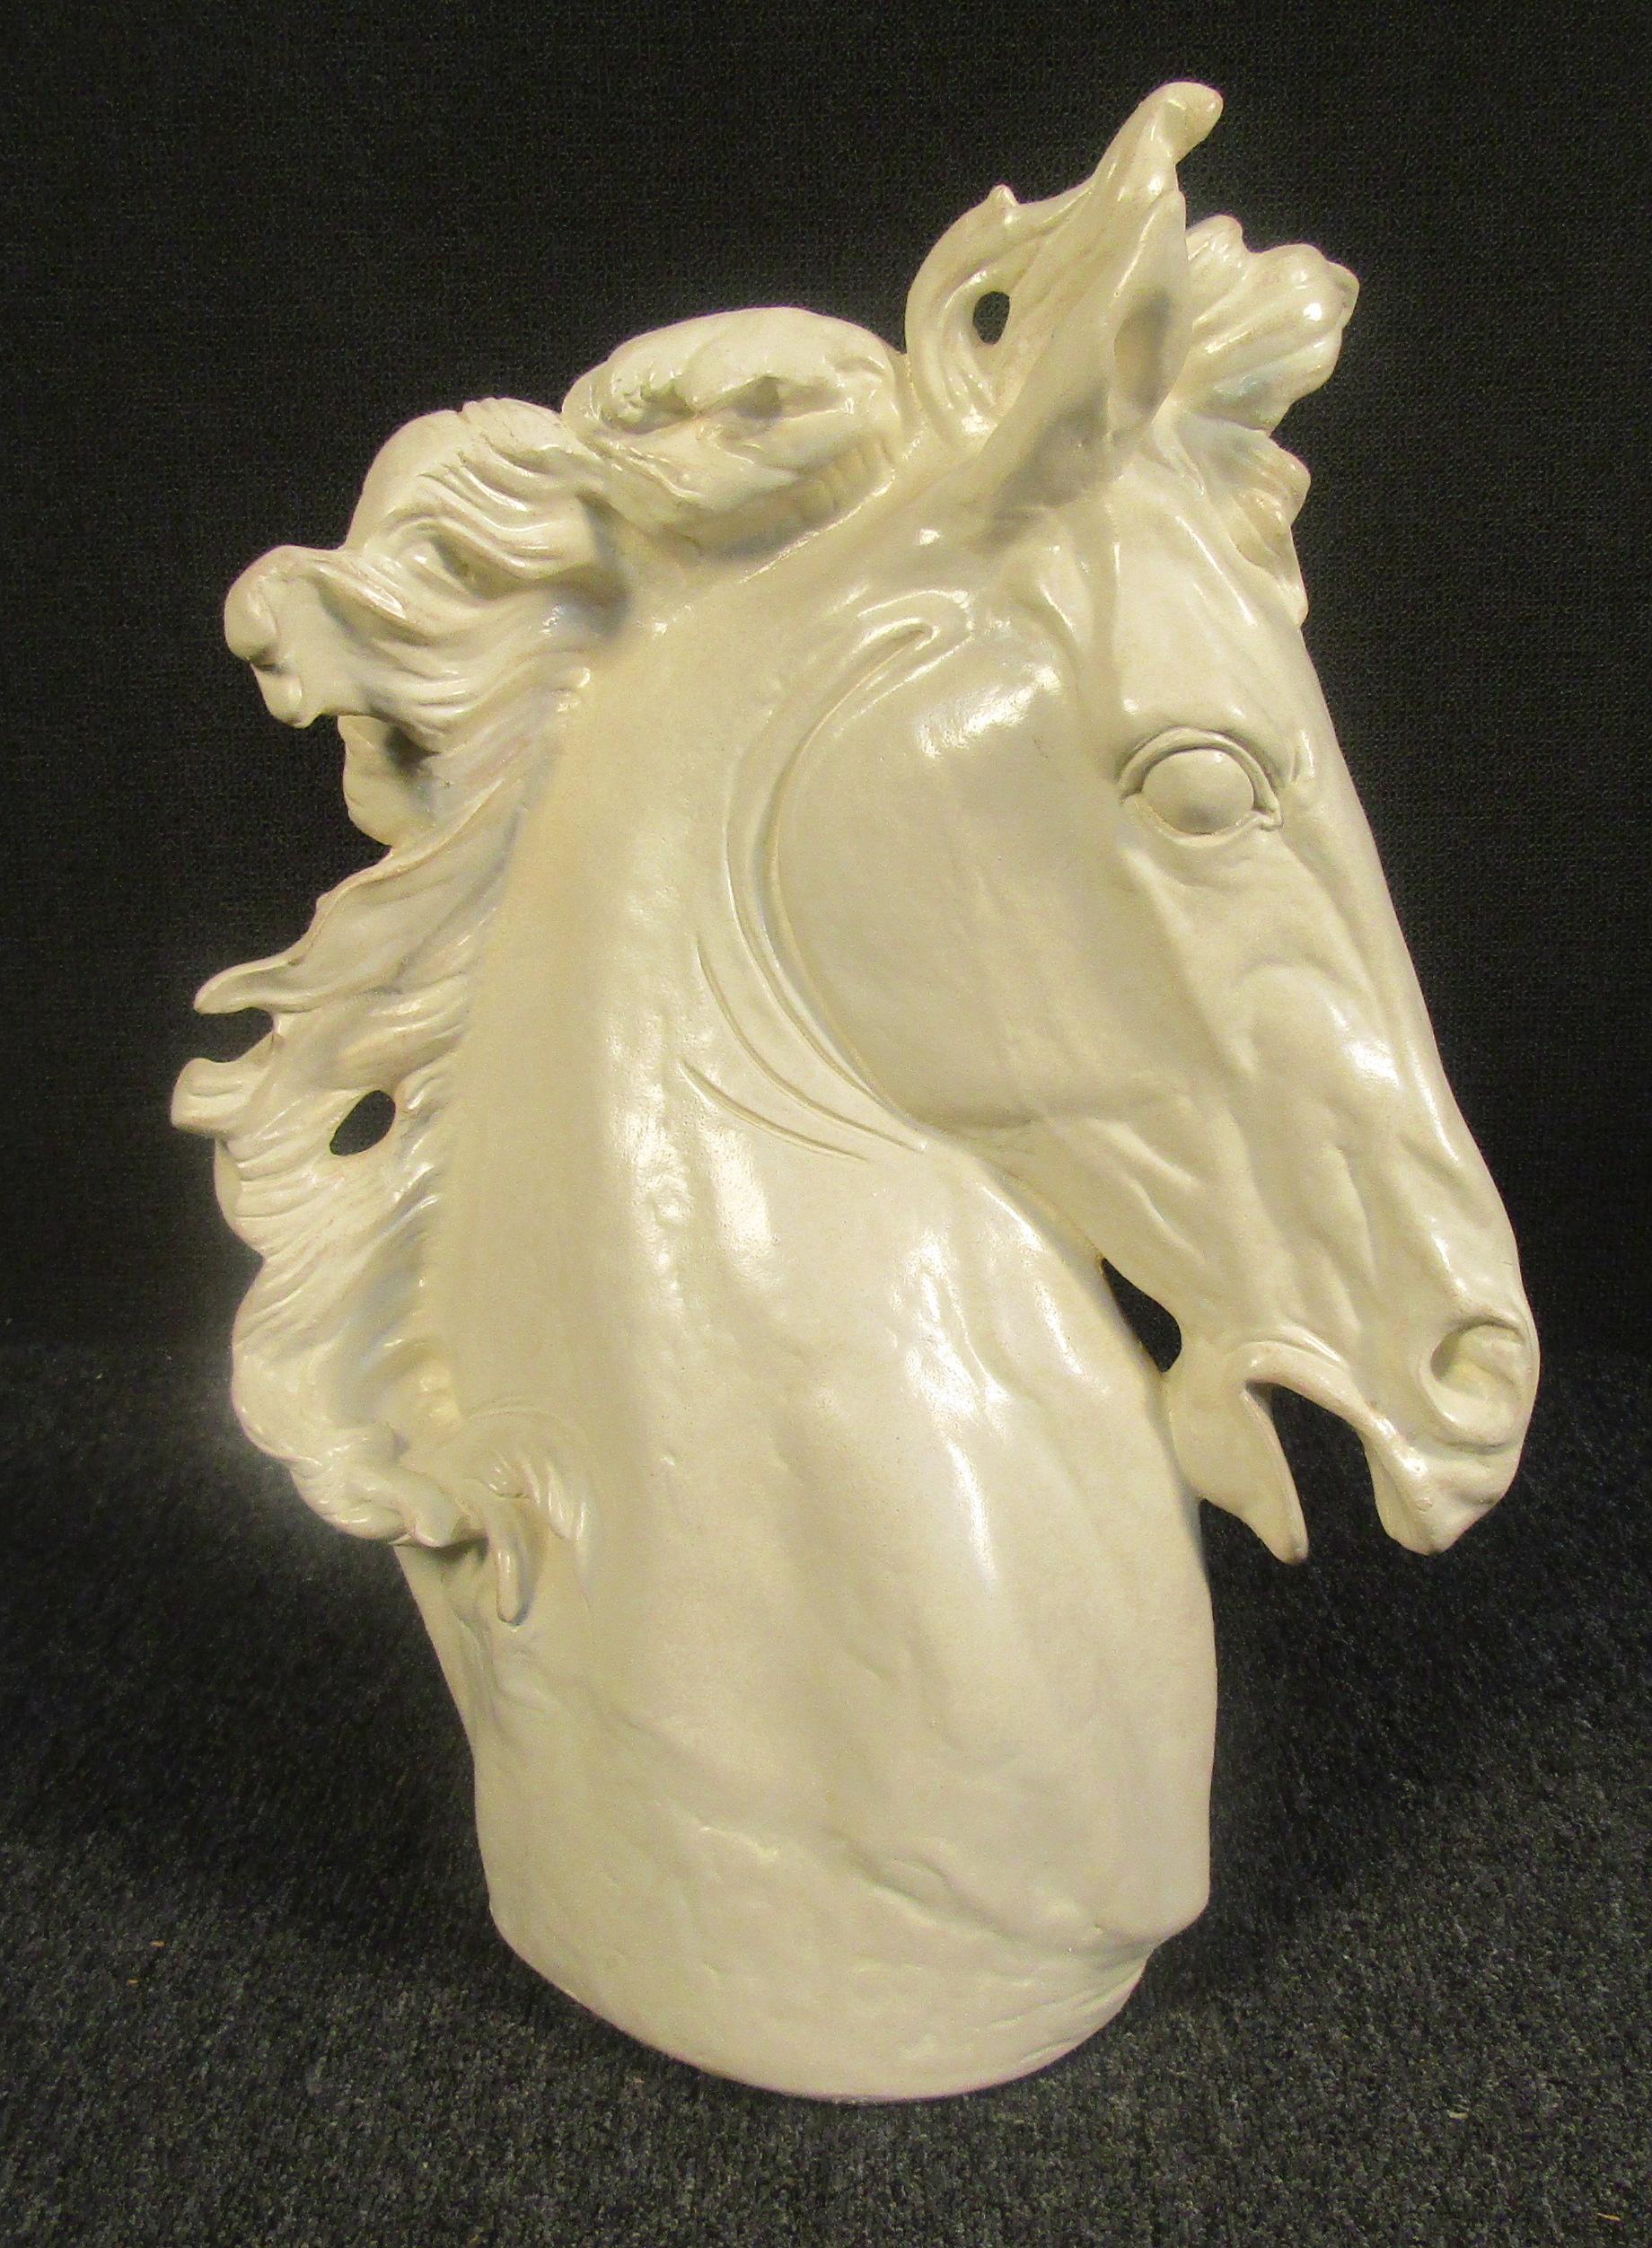 Superbe sculpture de tête de cheval blanc brillant. Cette magnifique pièce royale ajouterait sophistication et élégance à n'importe quel espace de votre maison.

Veuillez confirmer la localisation de l'objet auprès du vendeur (NY/NJ).